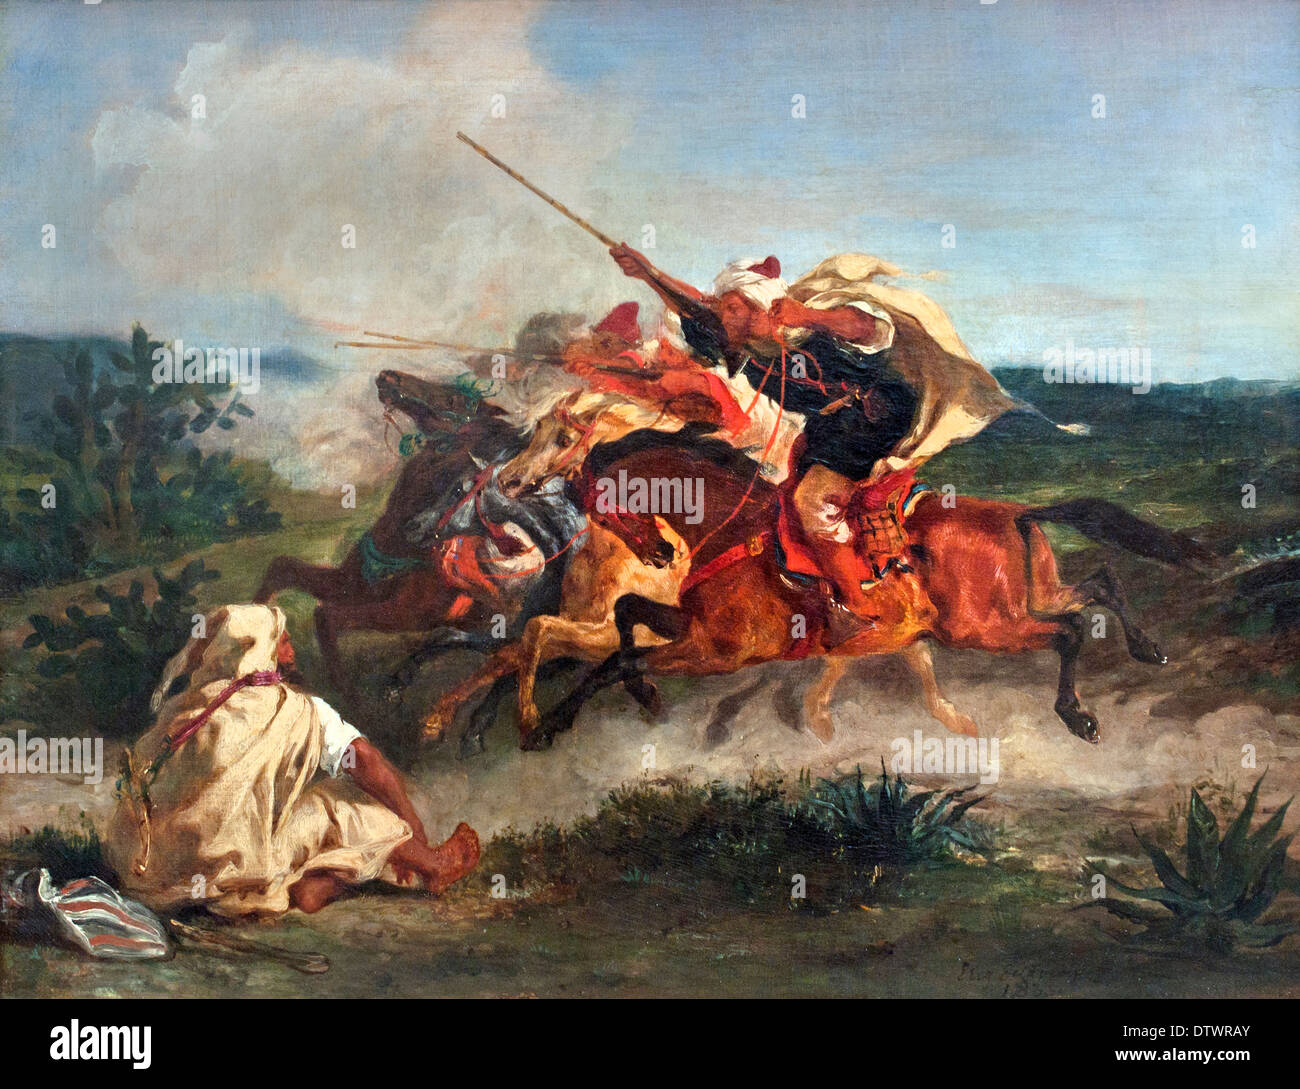 Arab Arabian Fantasy Pferd Ferdinand Victor Eugène Delacroix 1798 – 1863 Frankreich Französisch Stockfoto